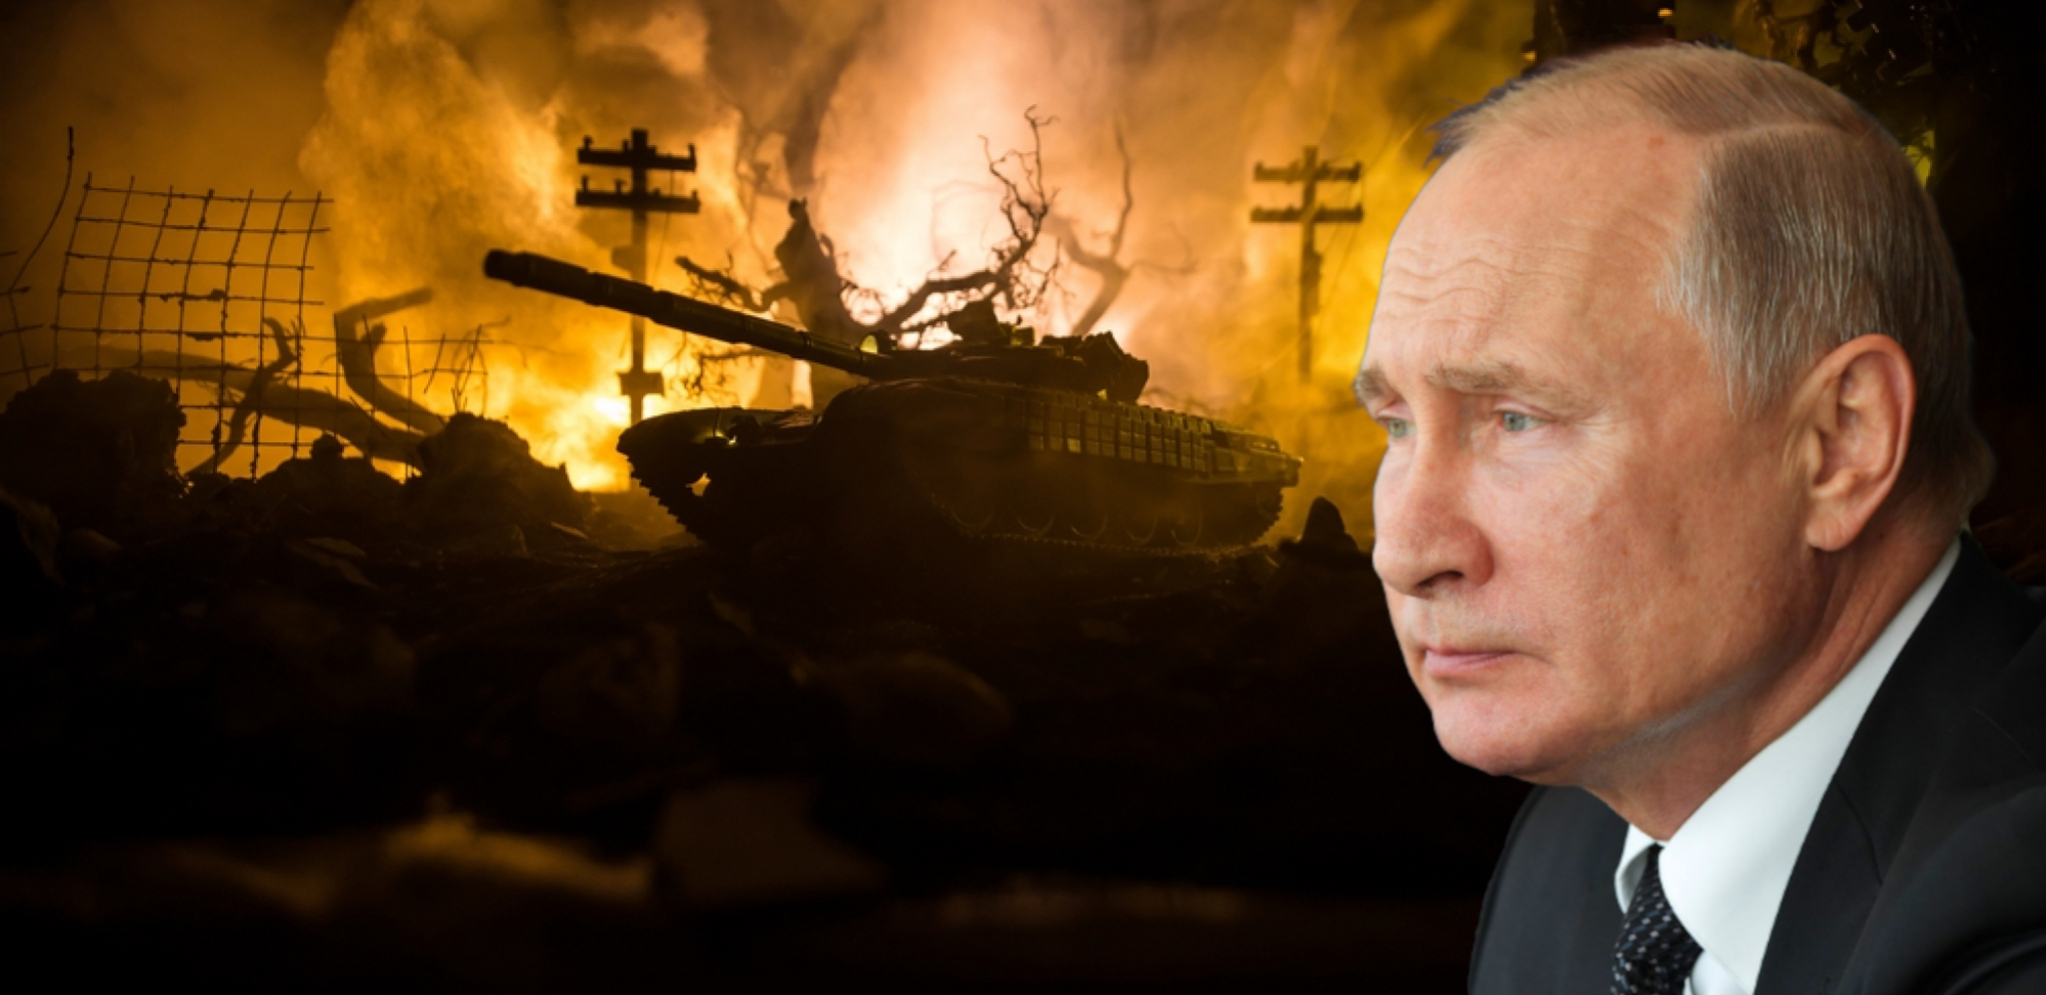 VELIKI PROBLEM ZA VAŠINGTON Zabrinjavajuće vesti za SAD zbog Rusije